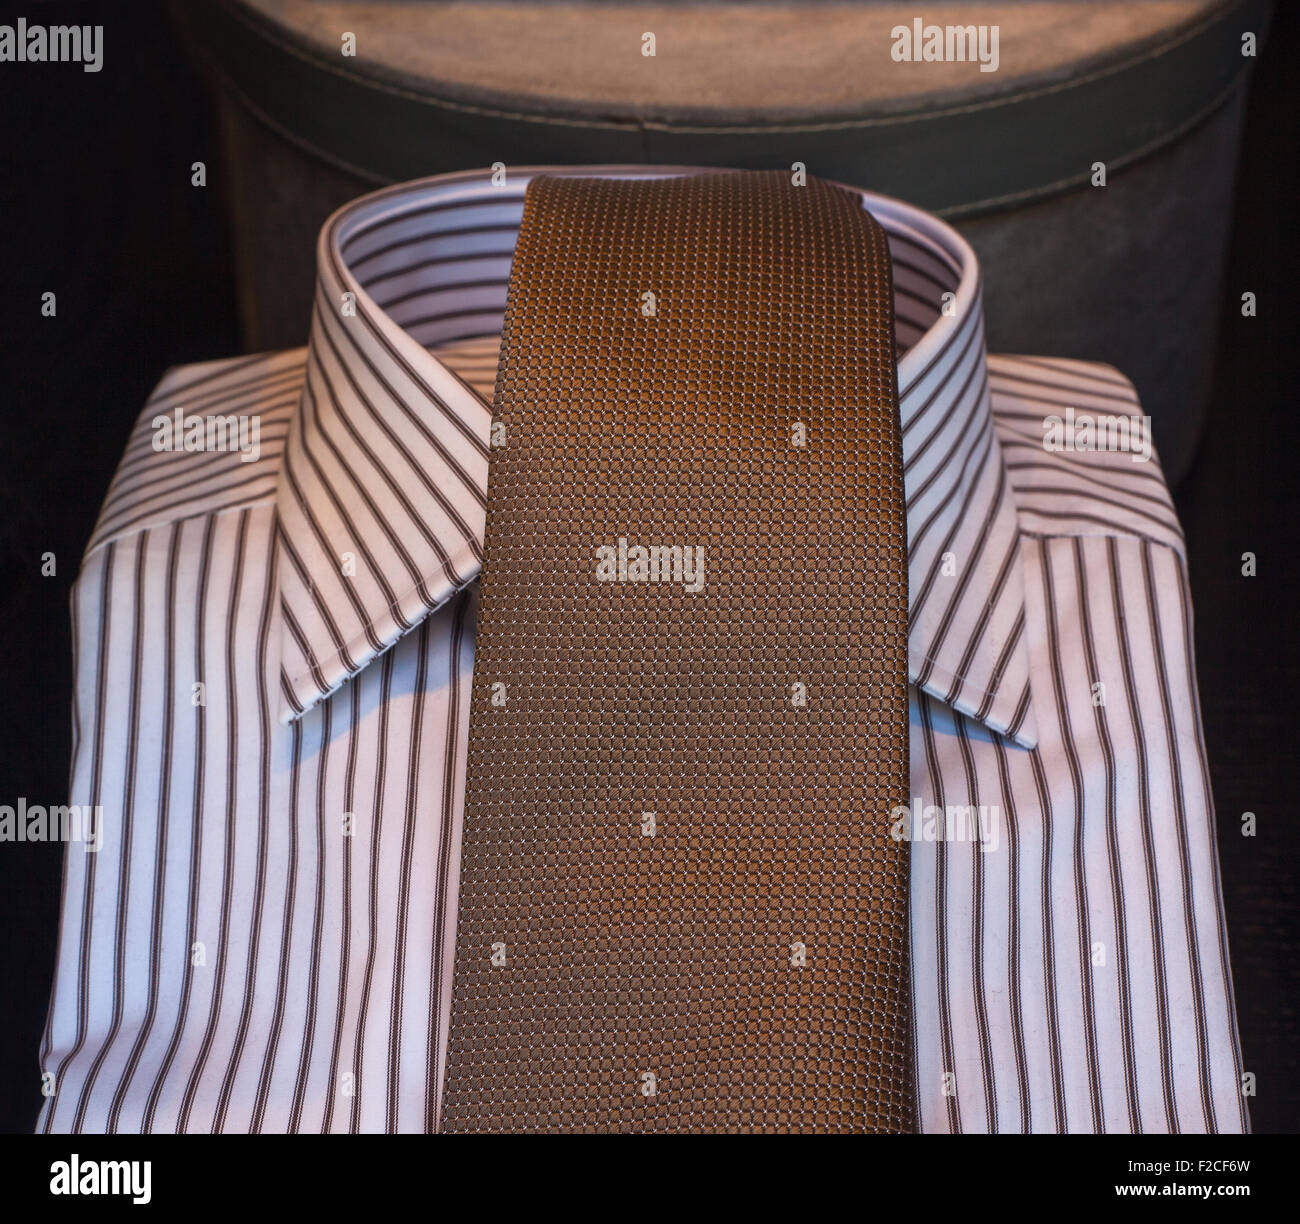 Vista de la elegante camisa a rayas y corbata Foto de stock